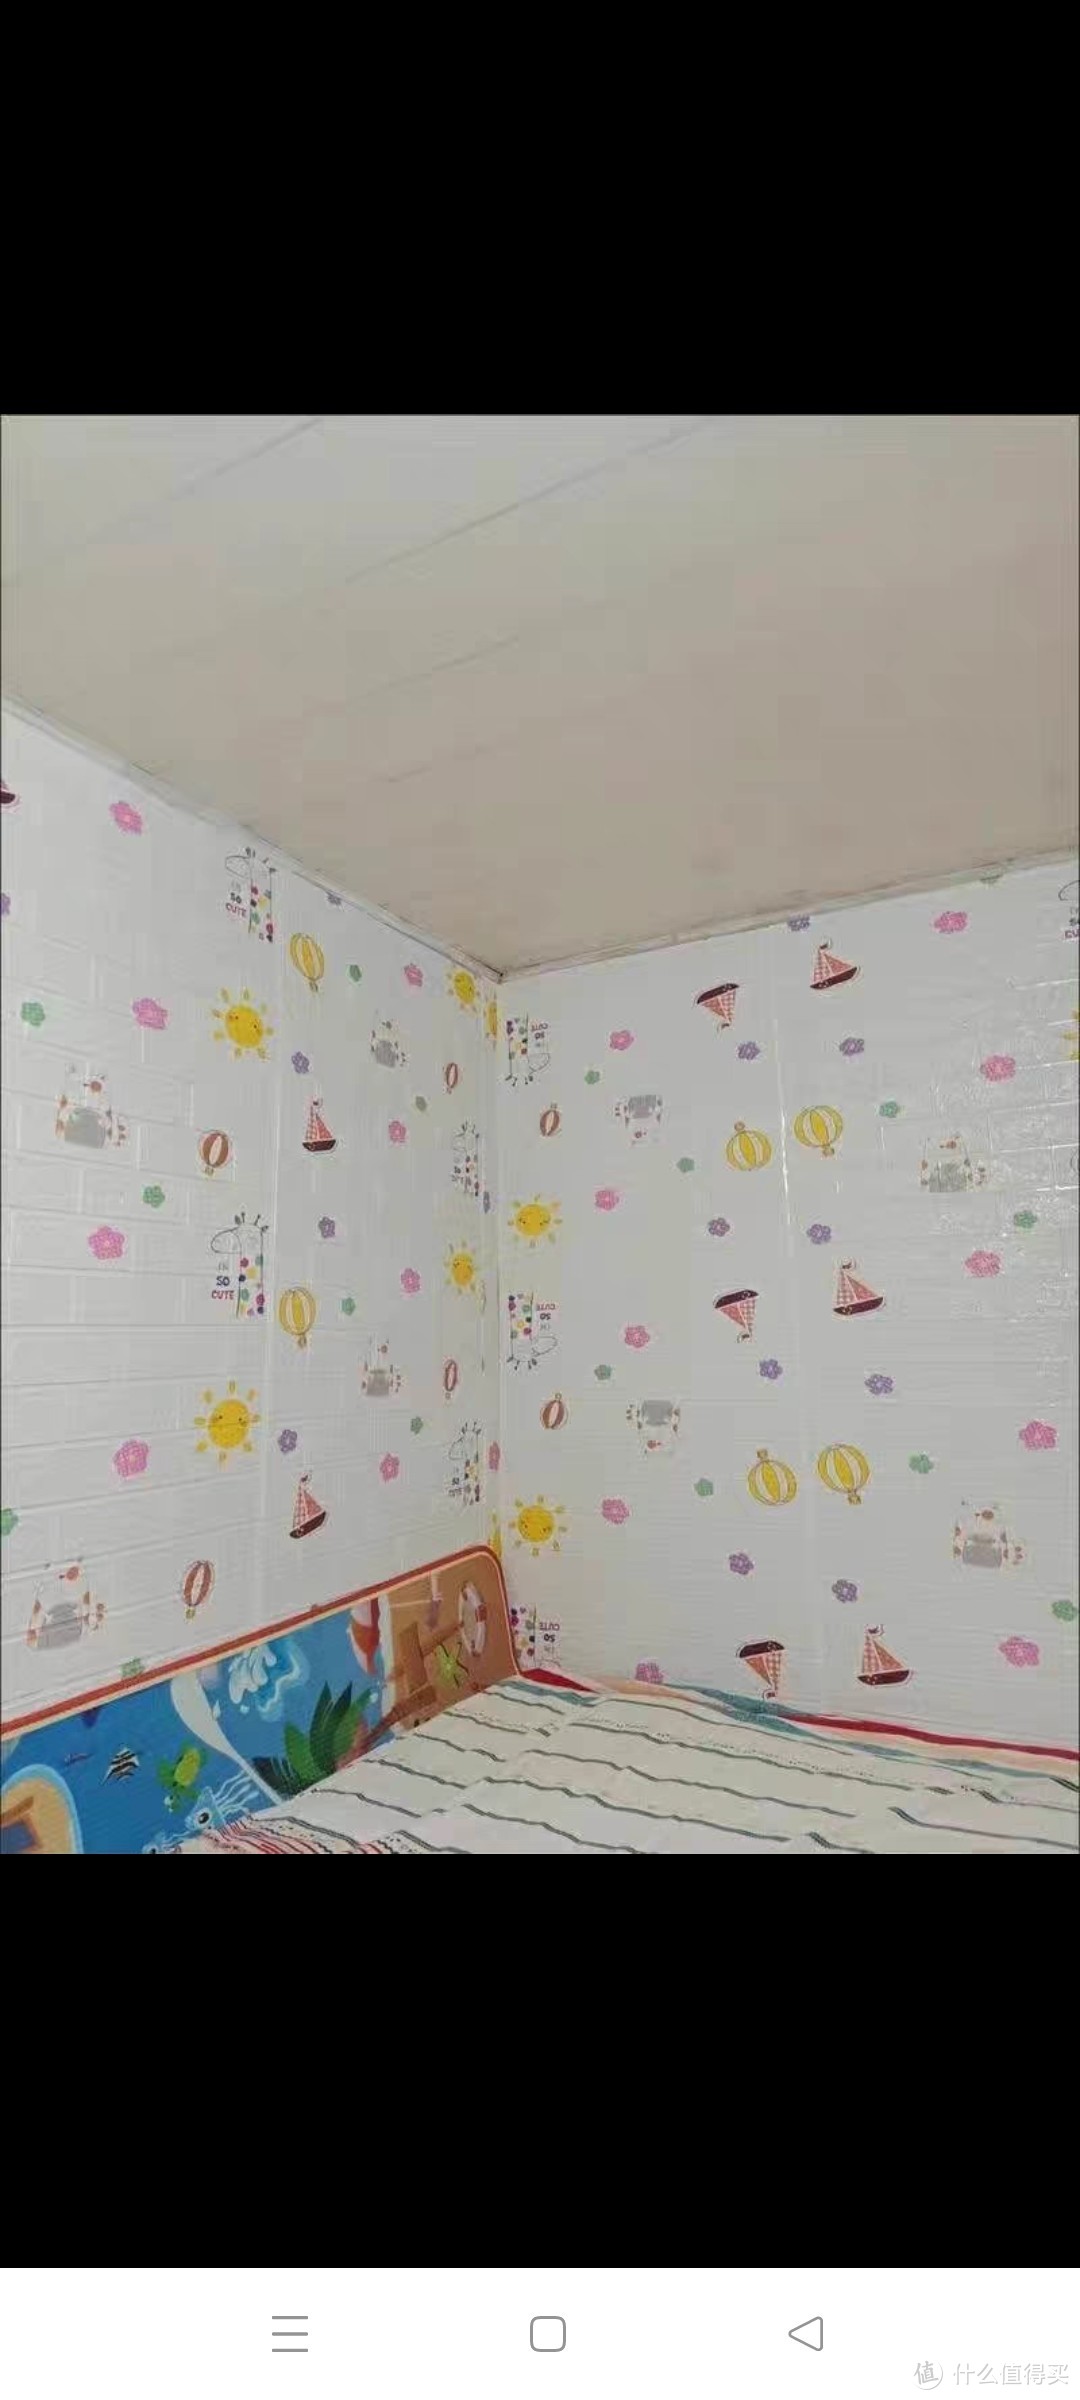 特厚隔音泡沫砖网红卡通背景墙纸自粘防水防潮墙贴纸卧室房间壁纸